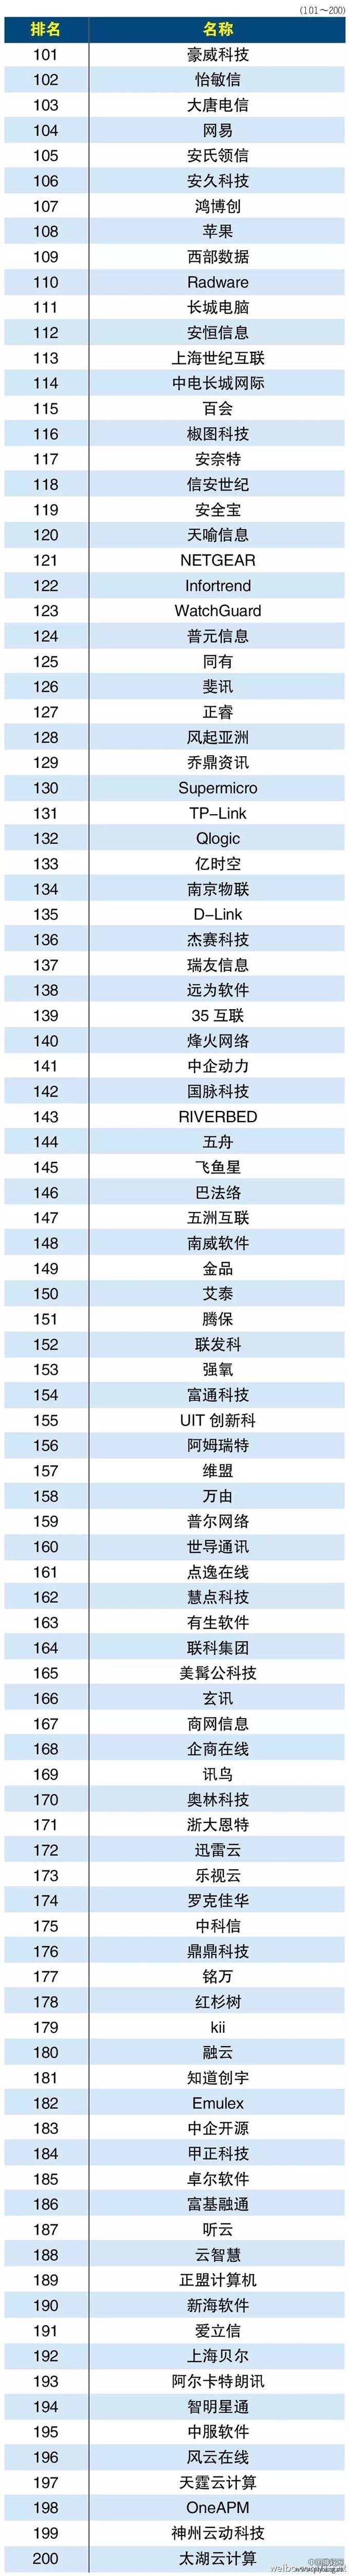 2015年中国云服务提供商排行榜Top500